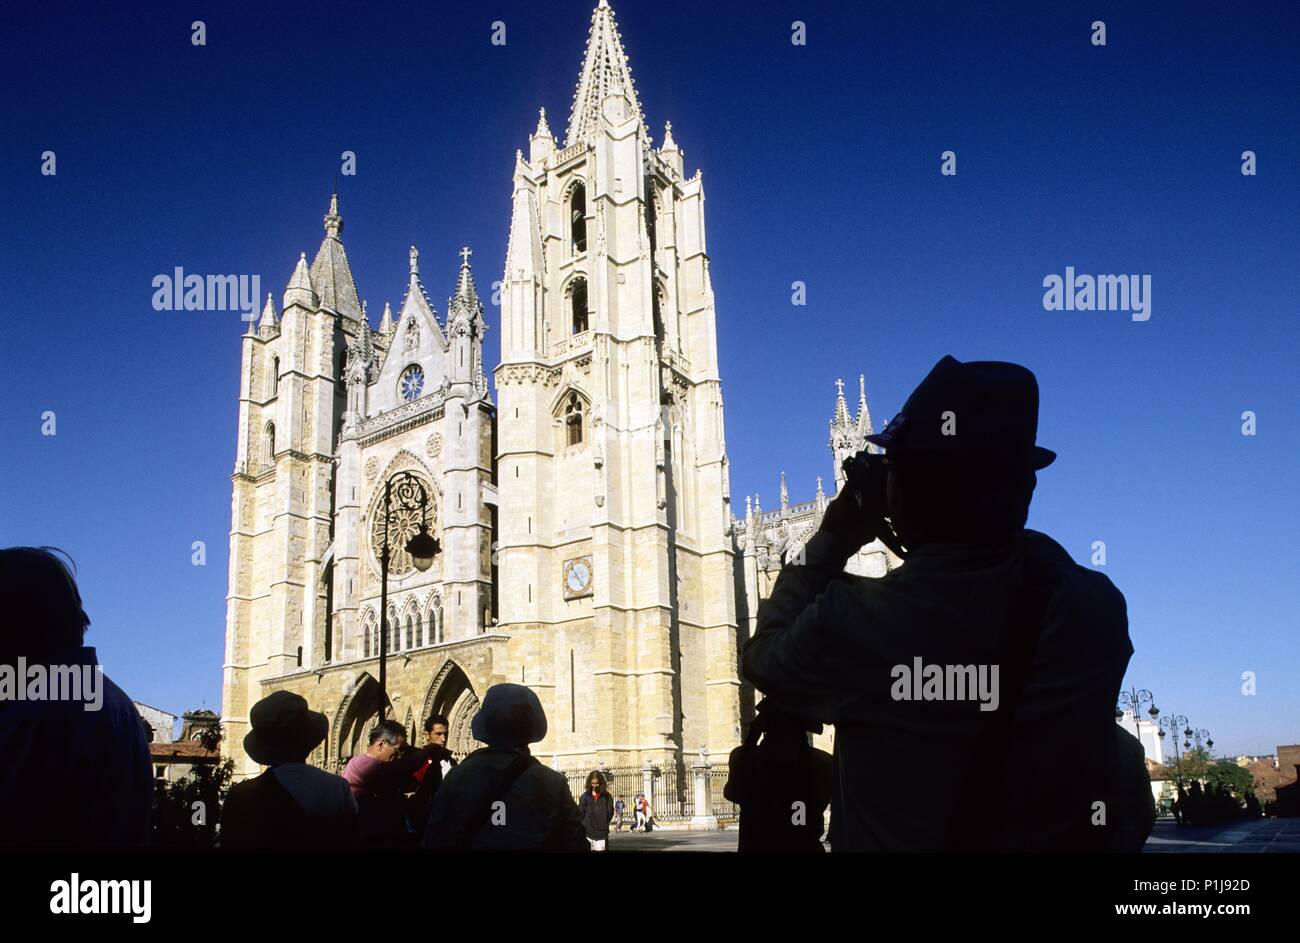 SPAIN - Castille and Leon - LEON. fachada principal de la Catedral (arquitectura gótica) desde la plaza Regia. Stock Photo